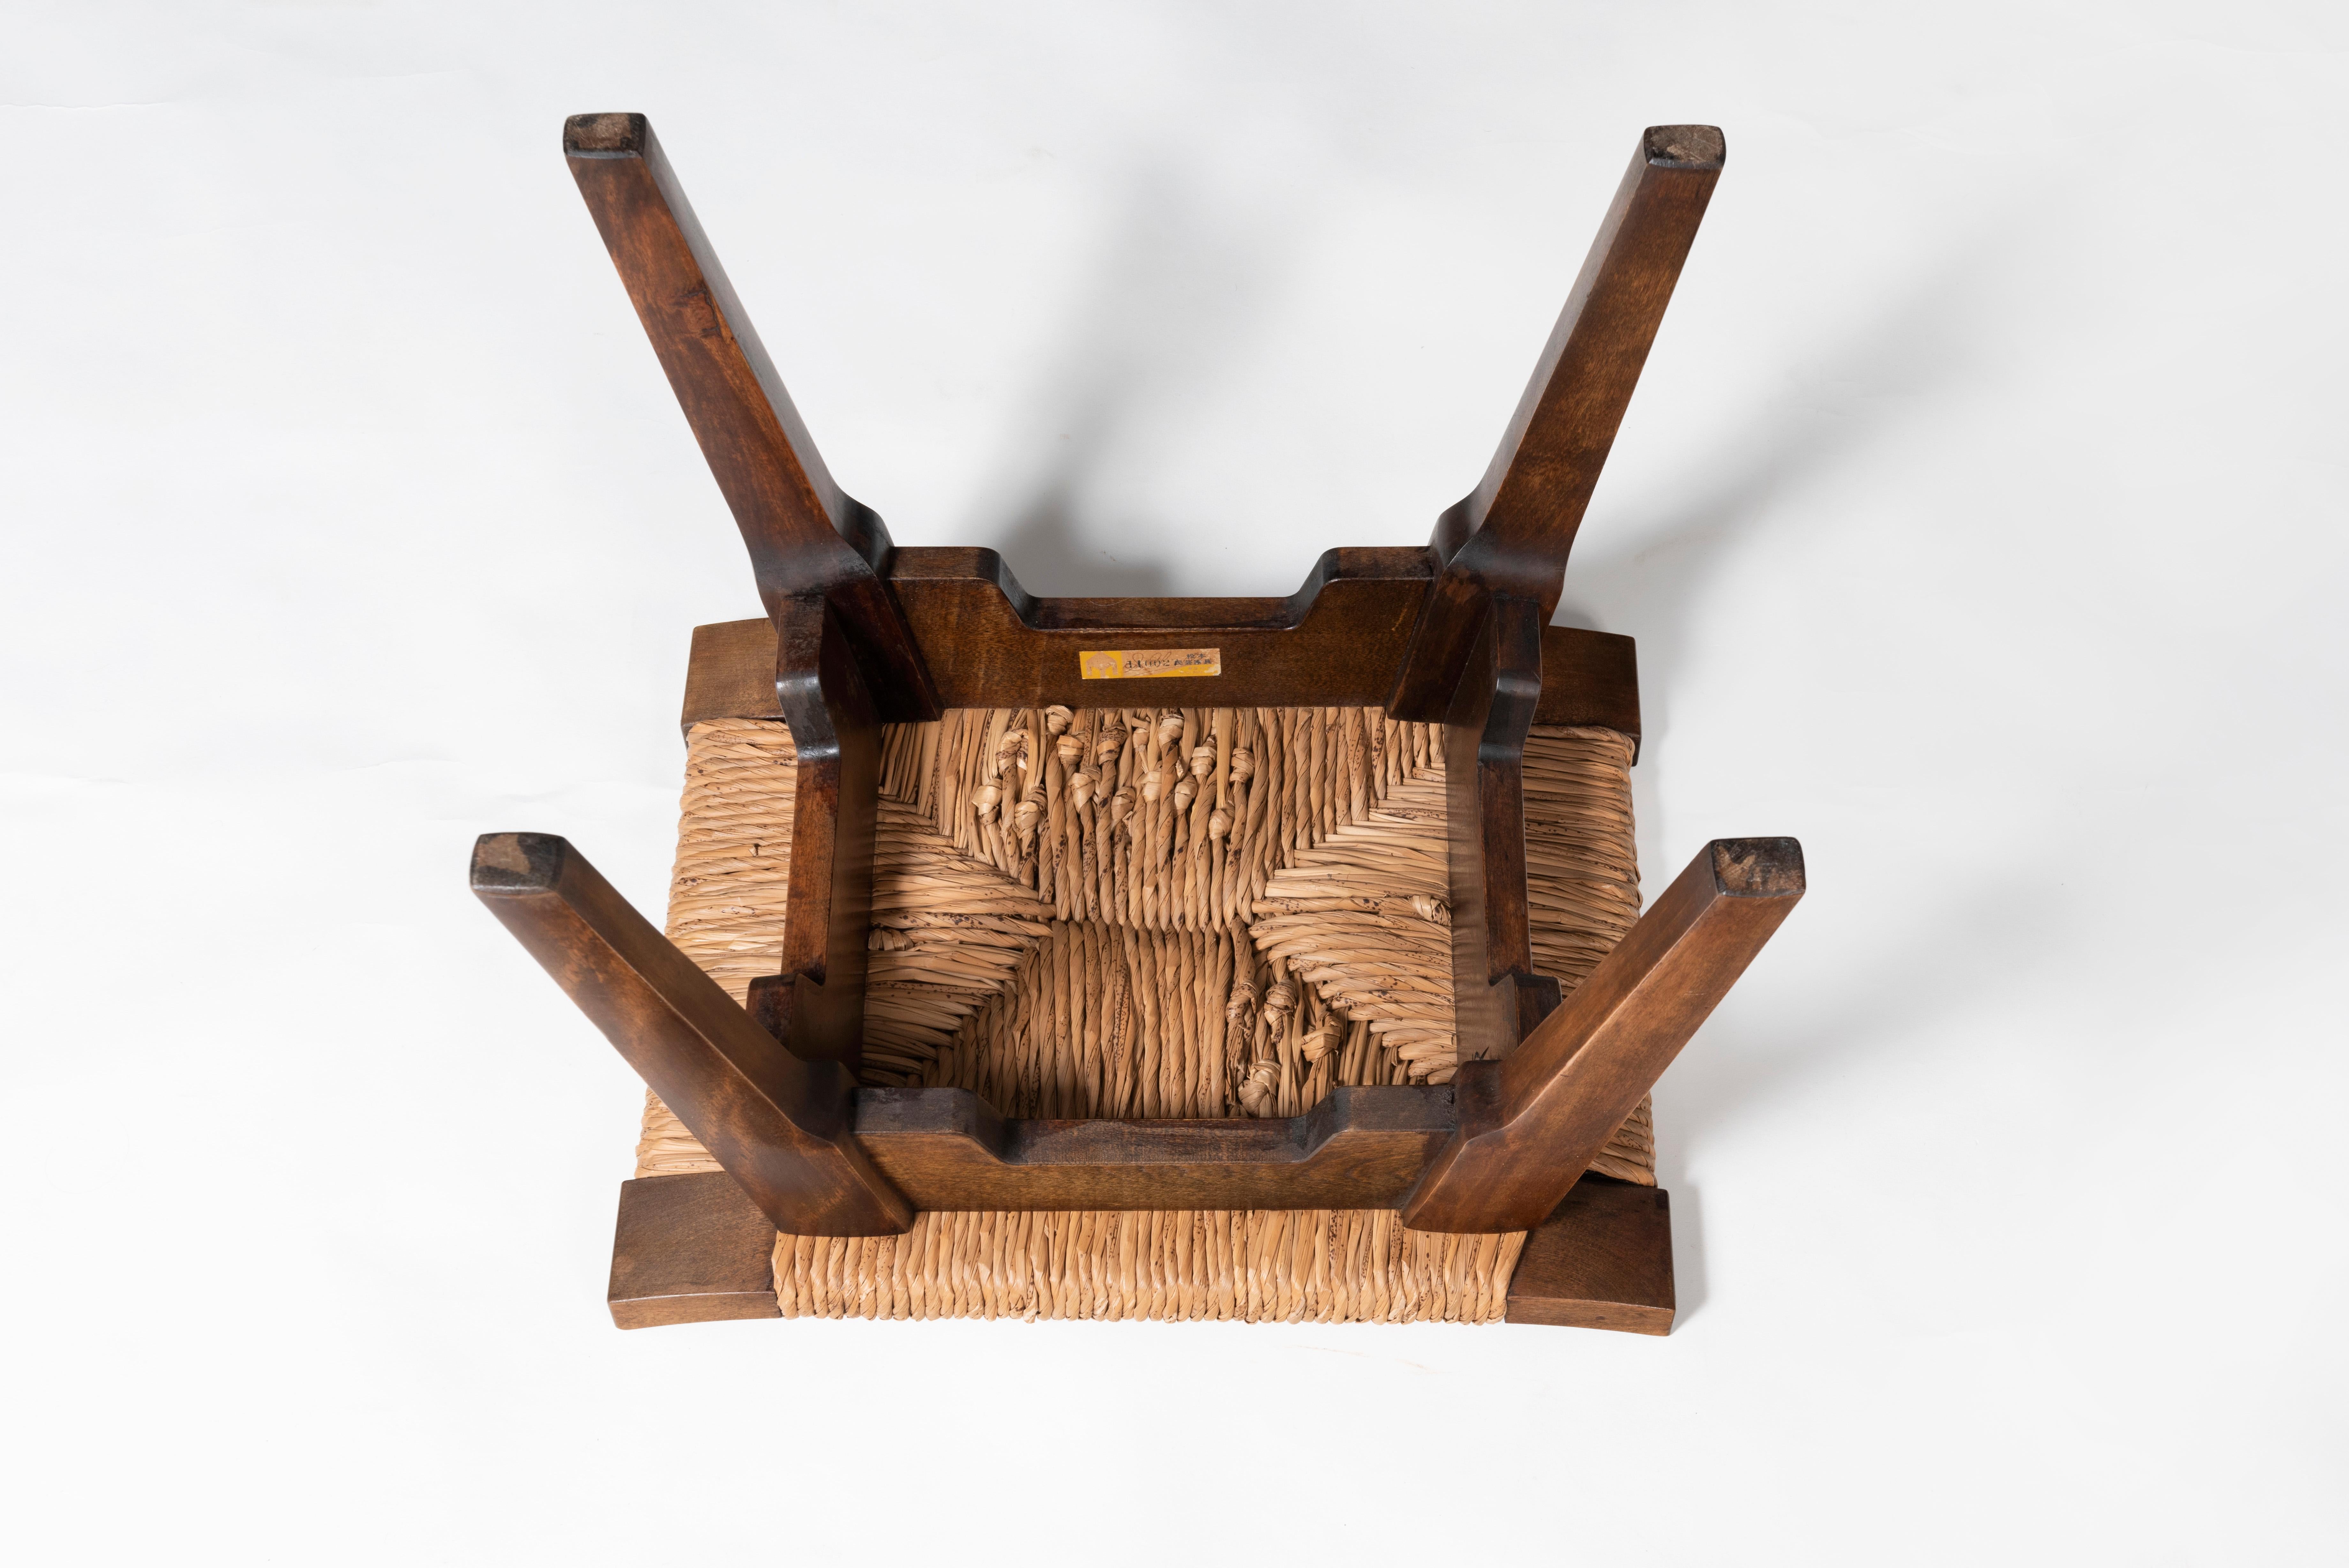 Ce tabouret a été fabriqué pour le Musée de l'artisanat populaire japonais en 1936. Fabriqué en bois de cerisier japonais et en jonc de mer. Aujourd'hui, vous pouvez encore voir les bancs originaux fabriqués pour ce musée. 
Yanagi Soetsu (1889 -